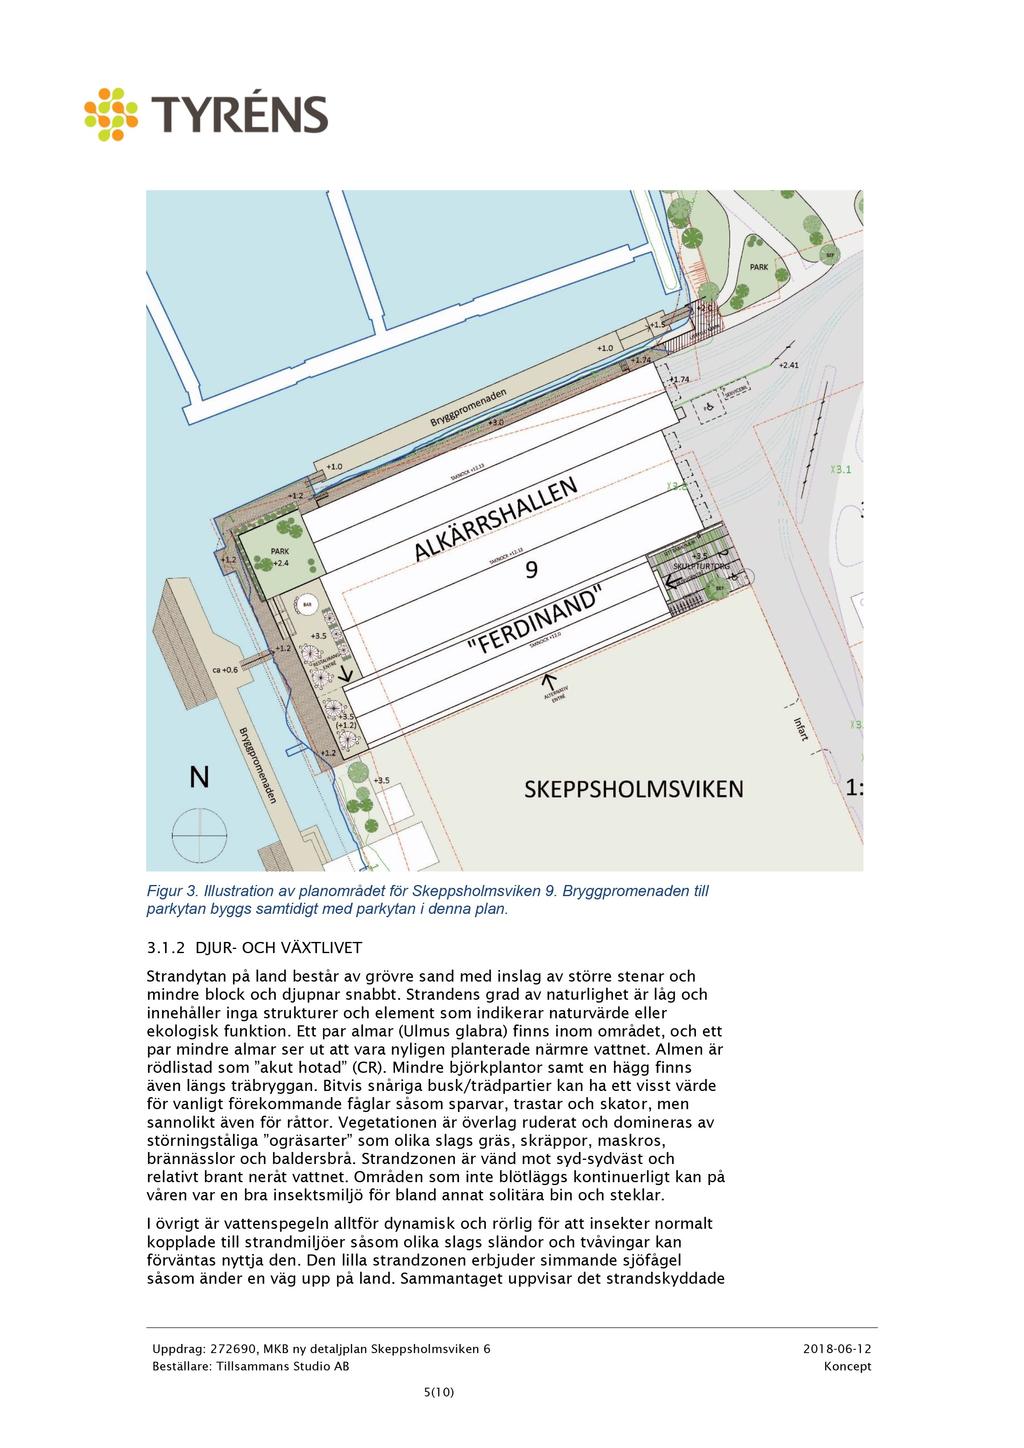 Figur 3. Illustration av planområde t för Skeppsholmsviken 9. Bryggpromenaden till parkytan byggs samtidigt med parkytan i denna plan. 3.1.